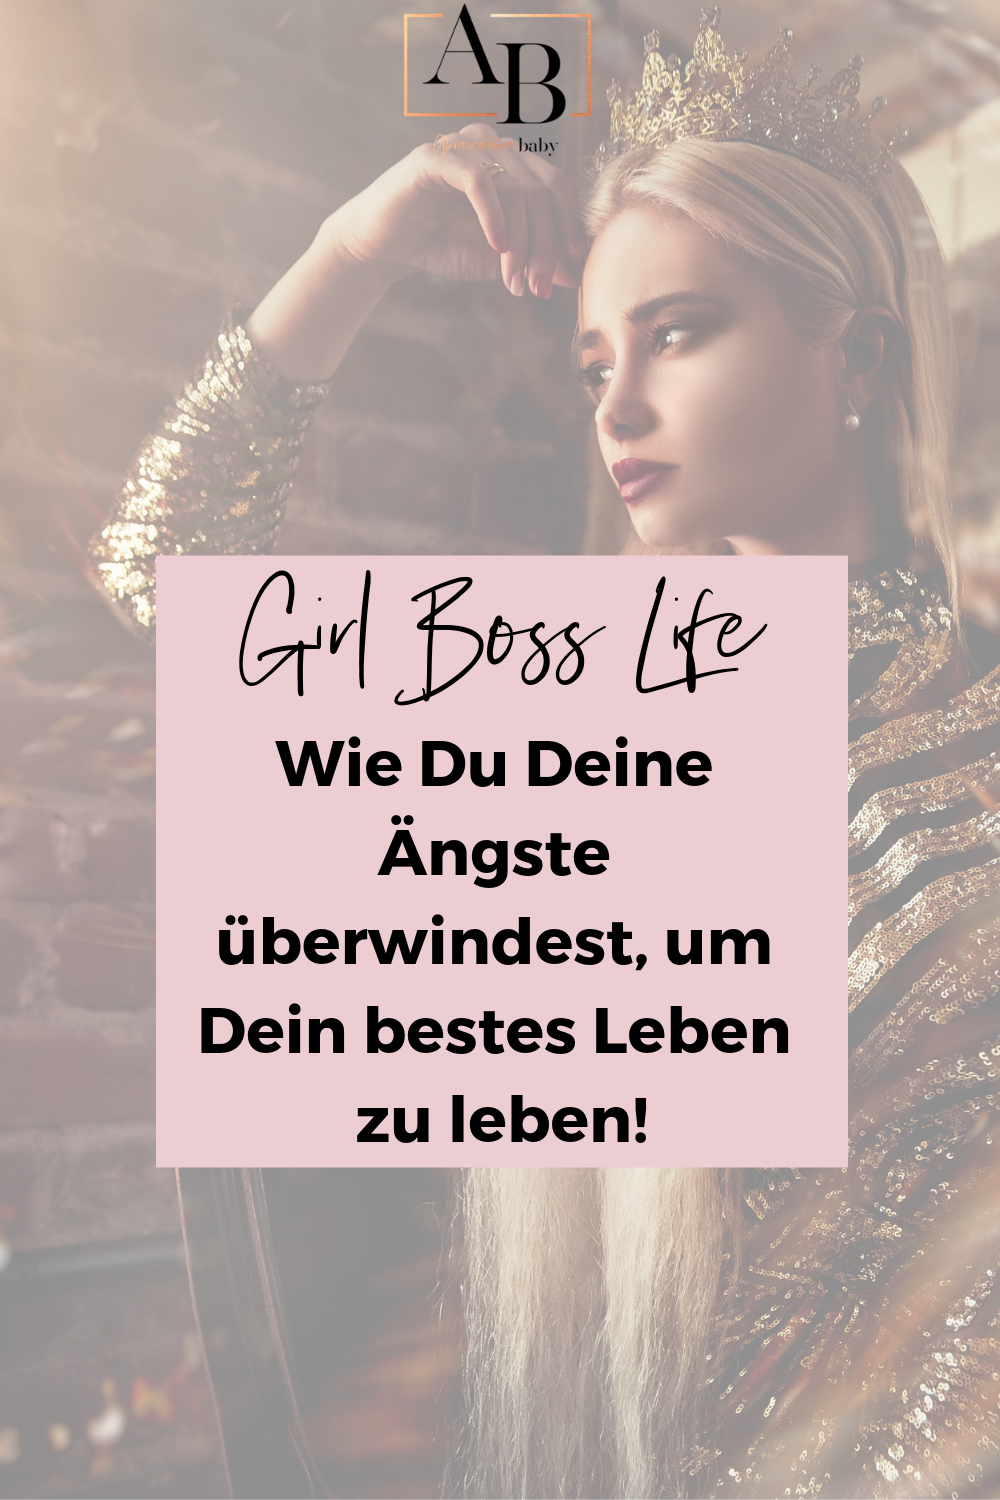 Ängste überwinden und Deine Komfortzone verlassen - DAS ist essentiell um ein echtes Girl Boss Leben zu führen!